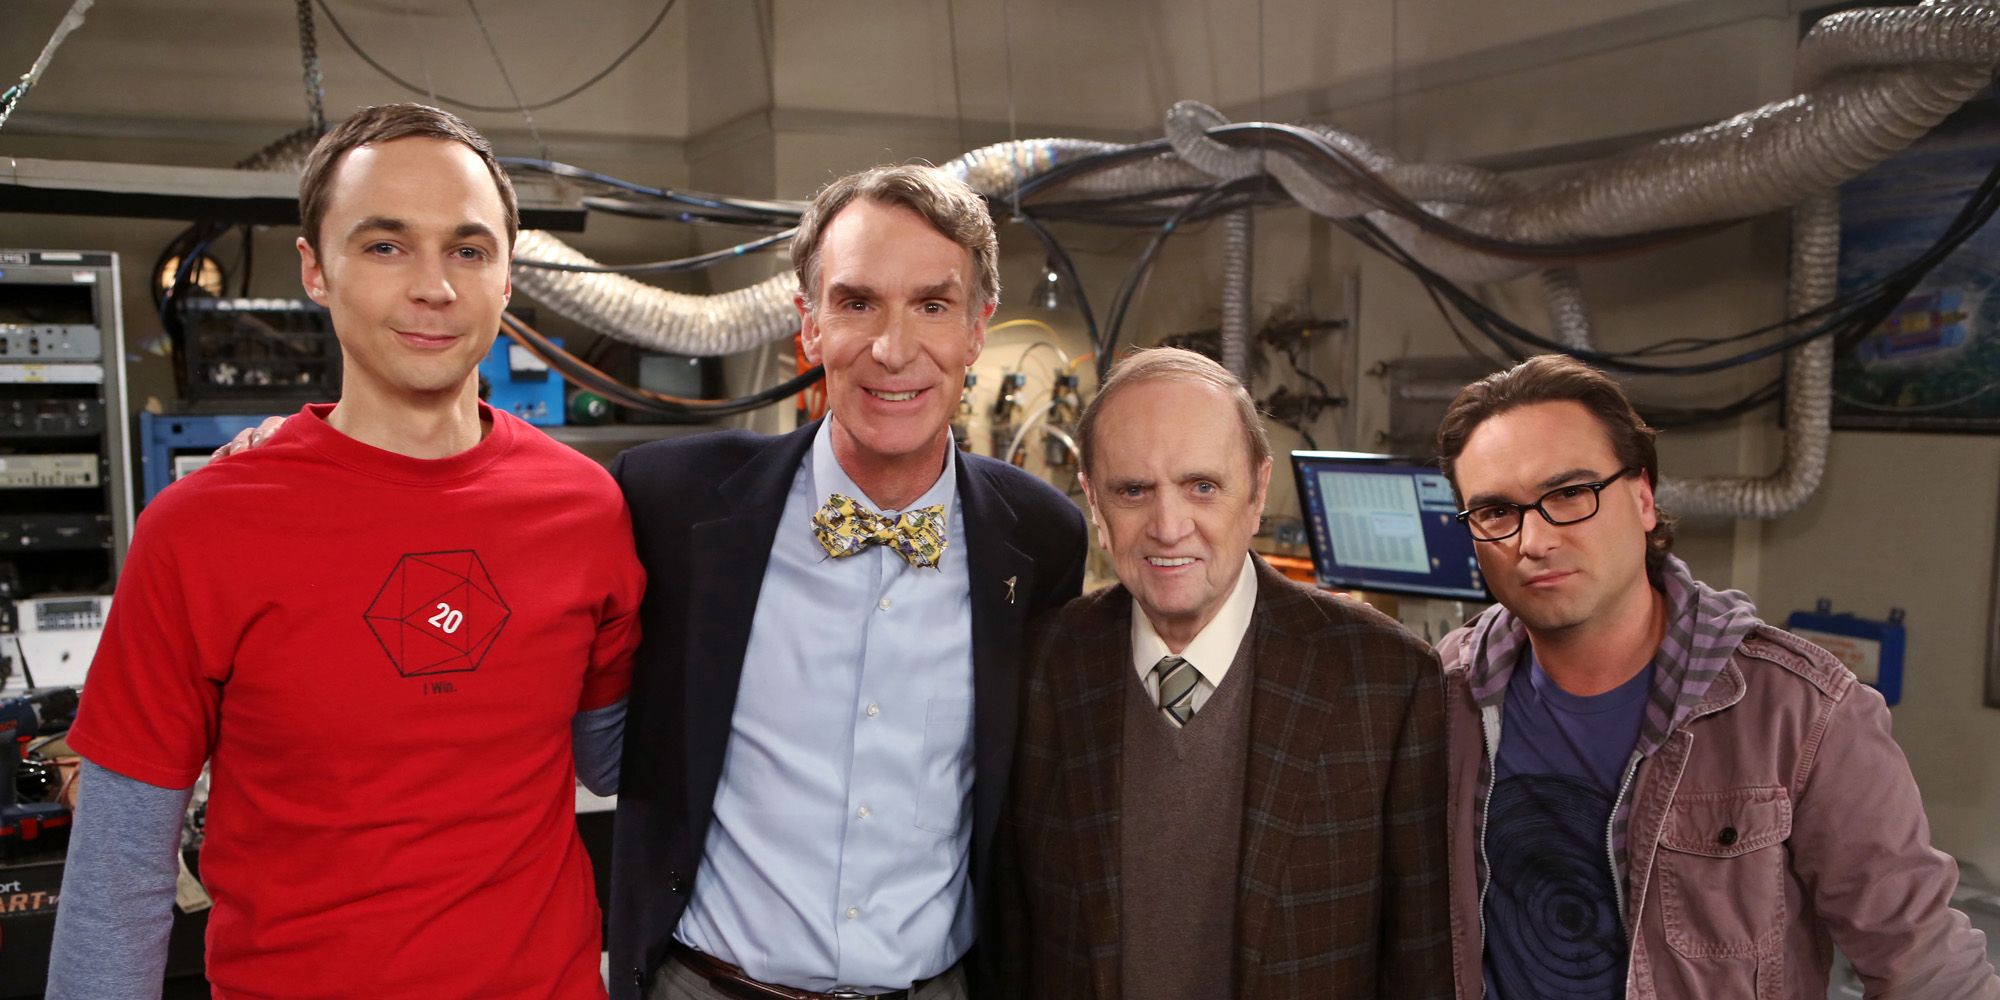 Bill Nye's cameo on The Big Bang Theory.